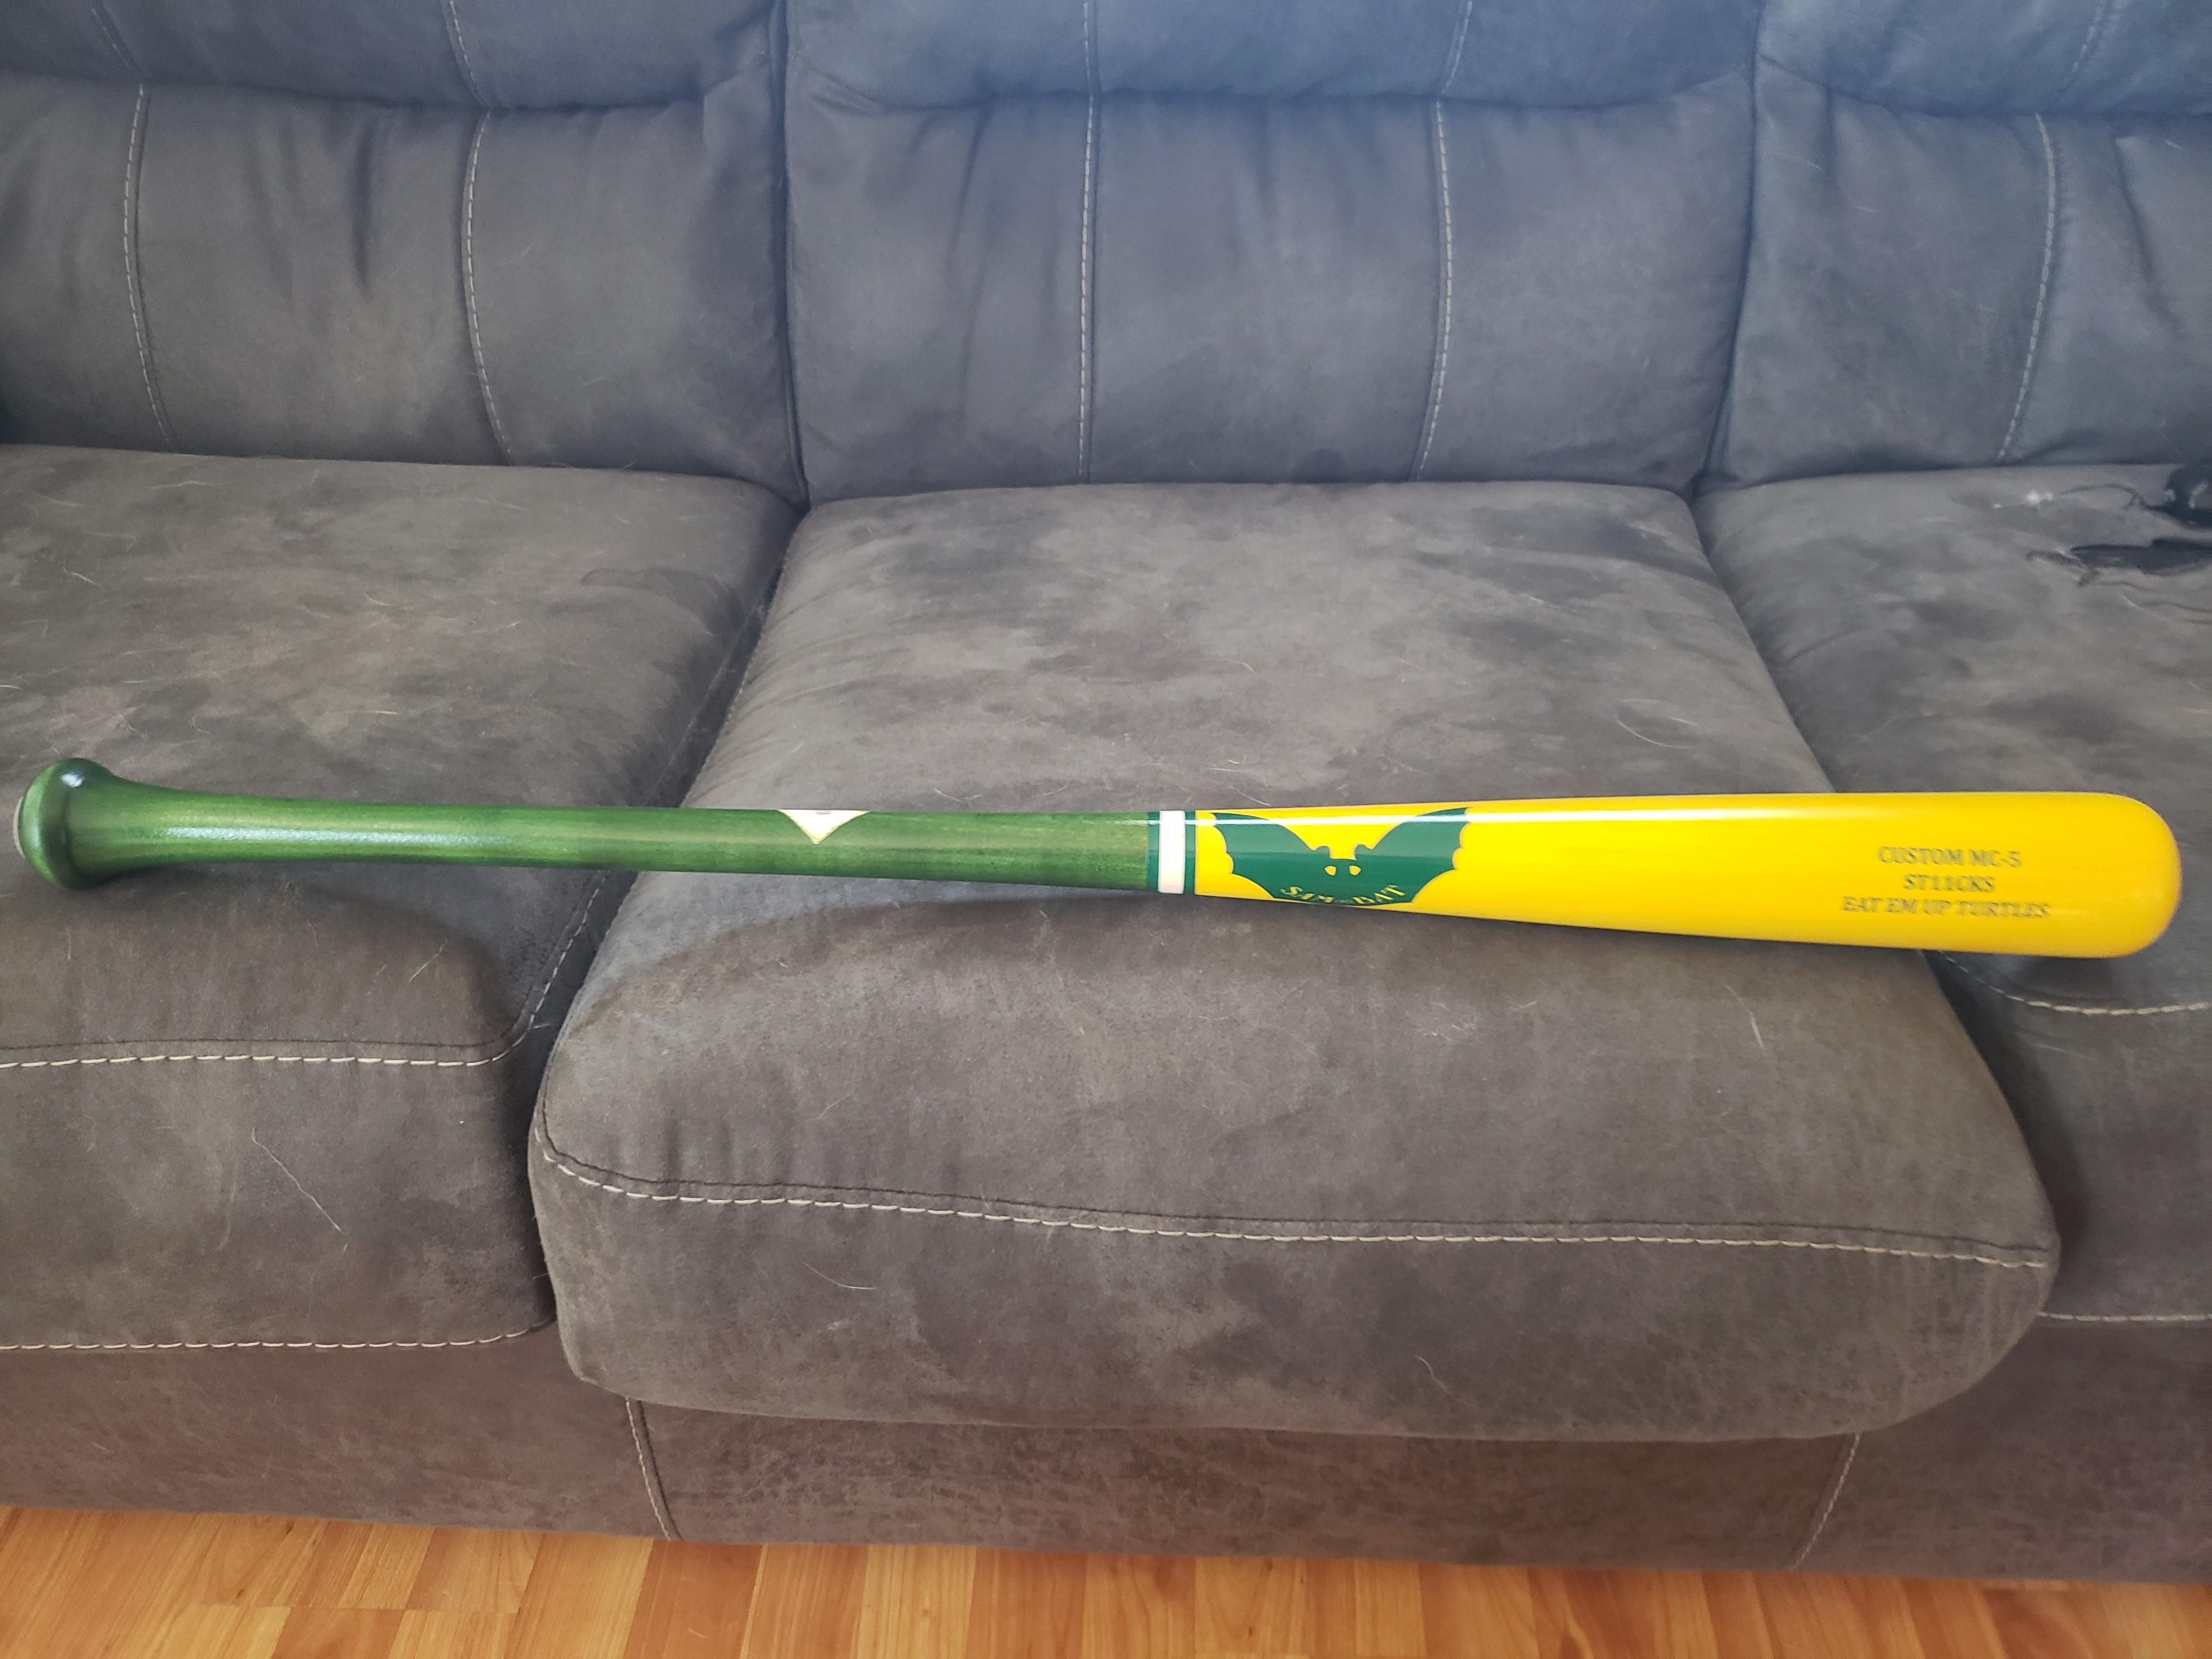 Sam Bat - Custom G27 - Maple Wood Baseball Bat – SAM BAT USA